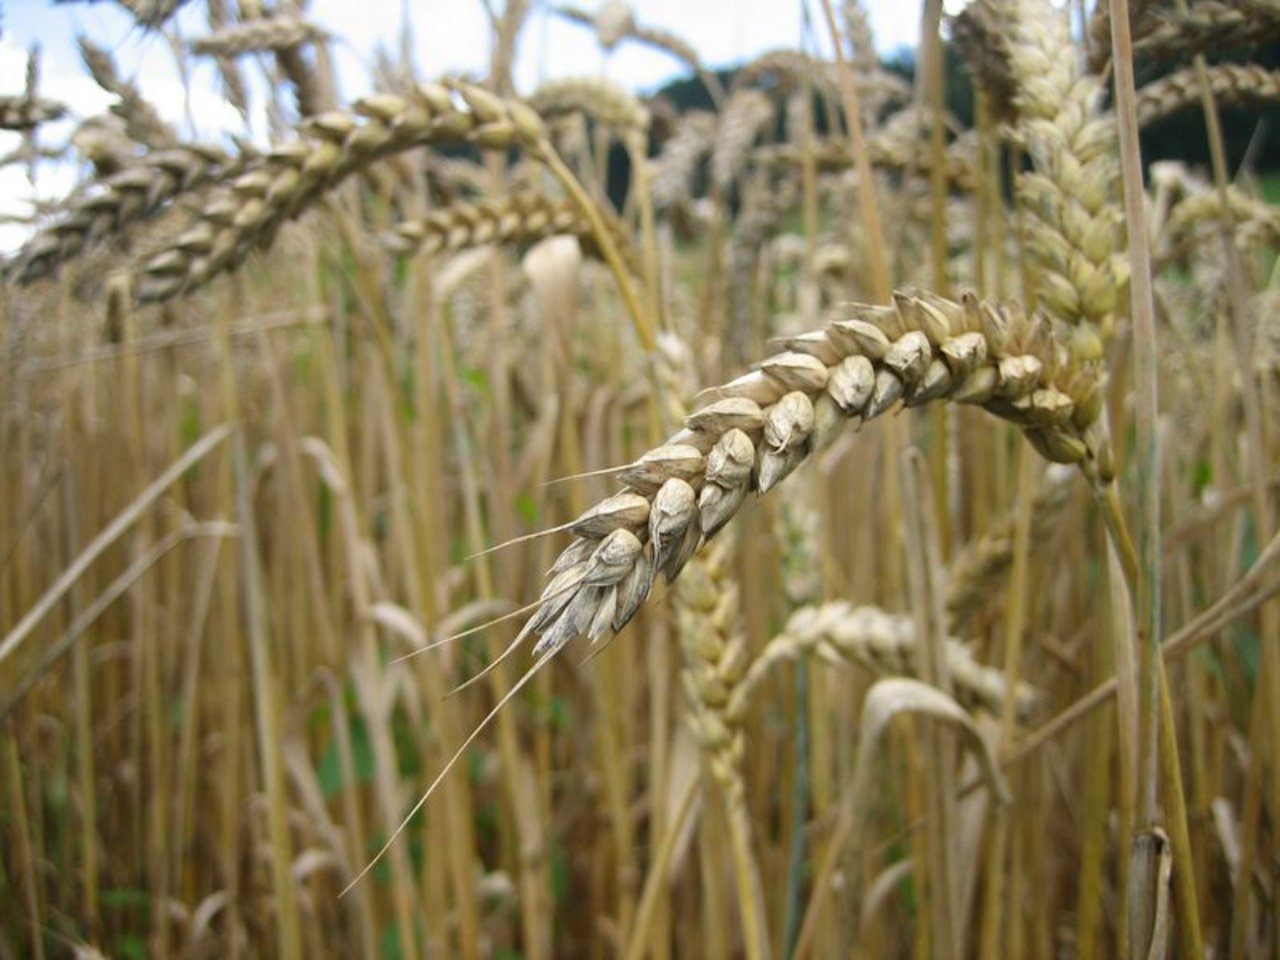  Insbesondere Weizen verzeichnete bei den Exportwerten eine Erhöhung. (Bild lid) 